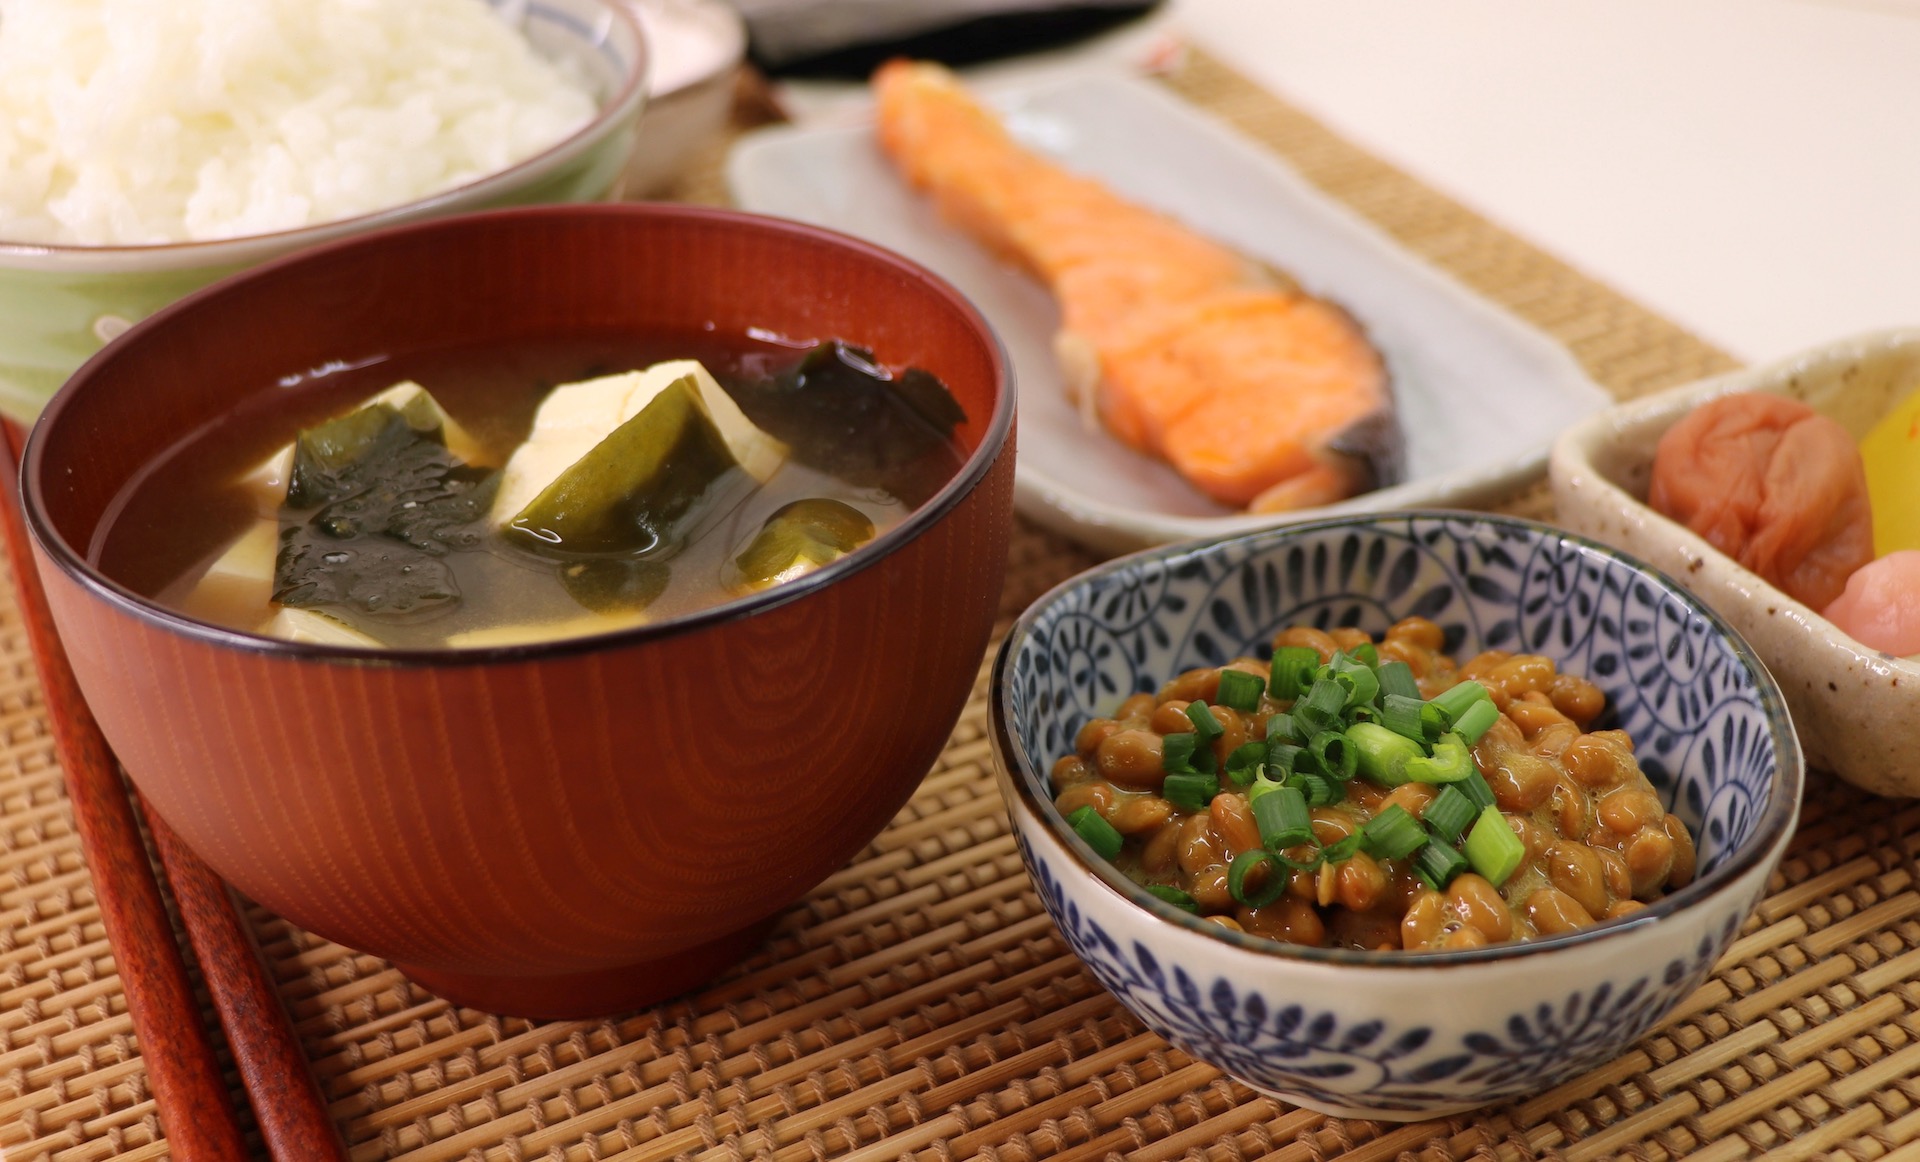 Натто (традиционная японская еда из сброженных соевых бобов). Японский завтрак. Японский суп для завтрака. Национальное японское блюдо консервированные Бобы.